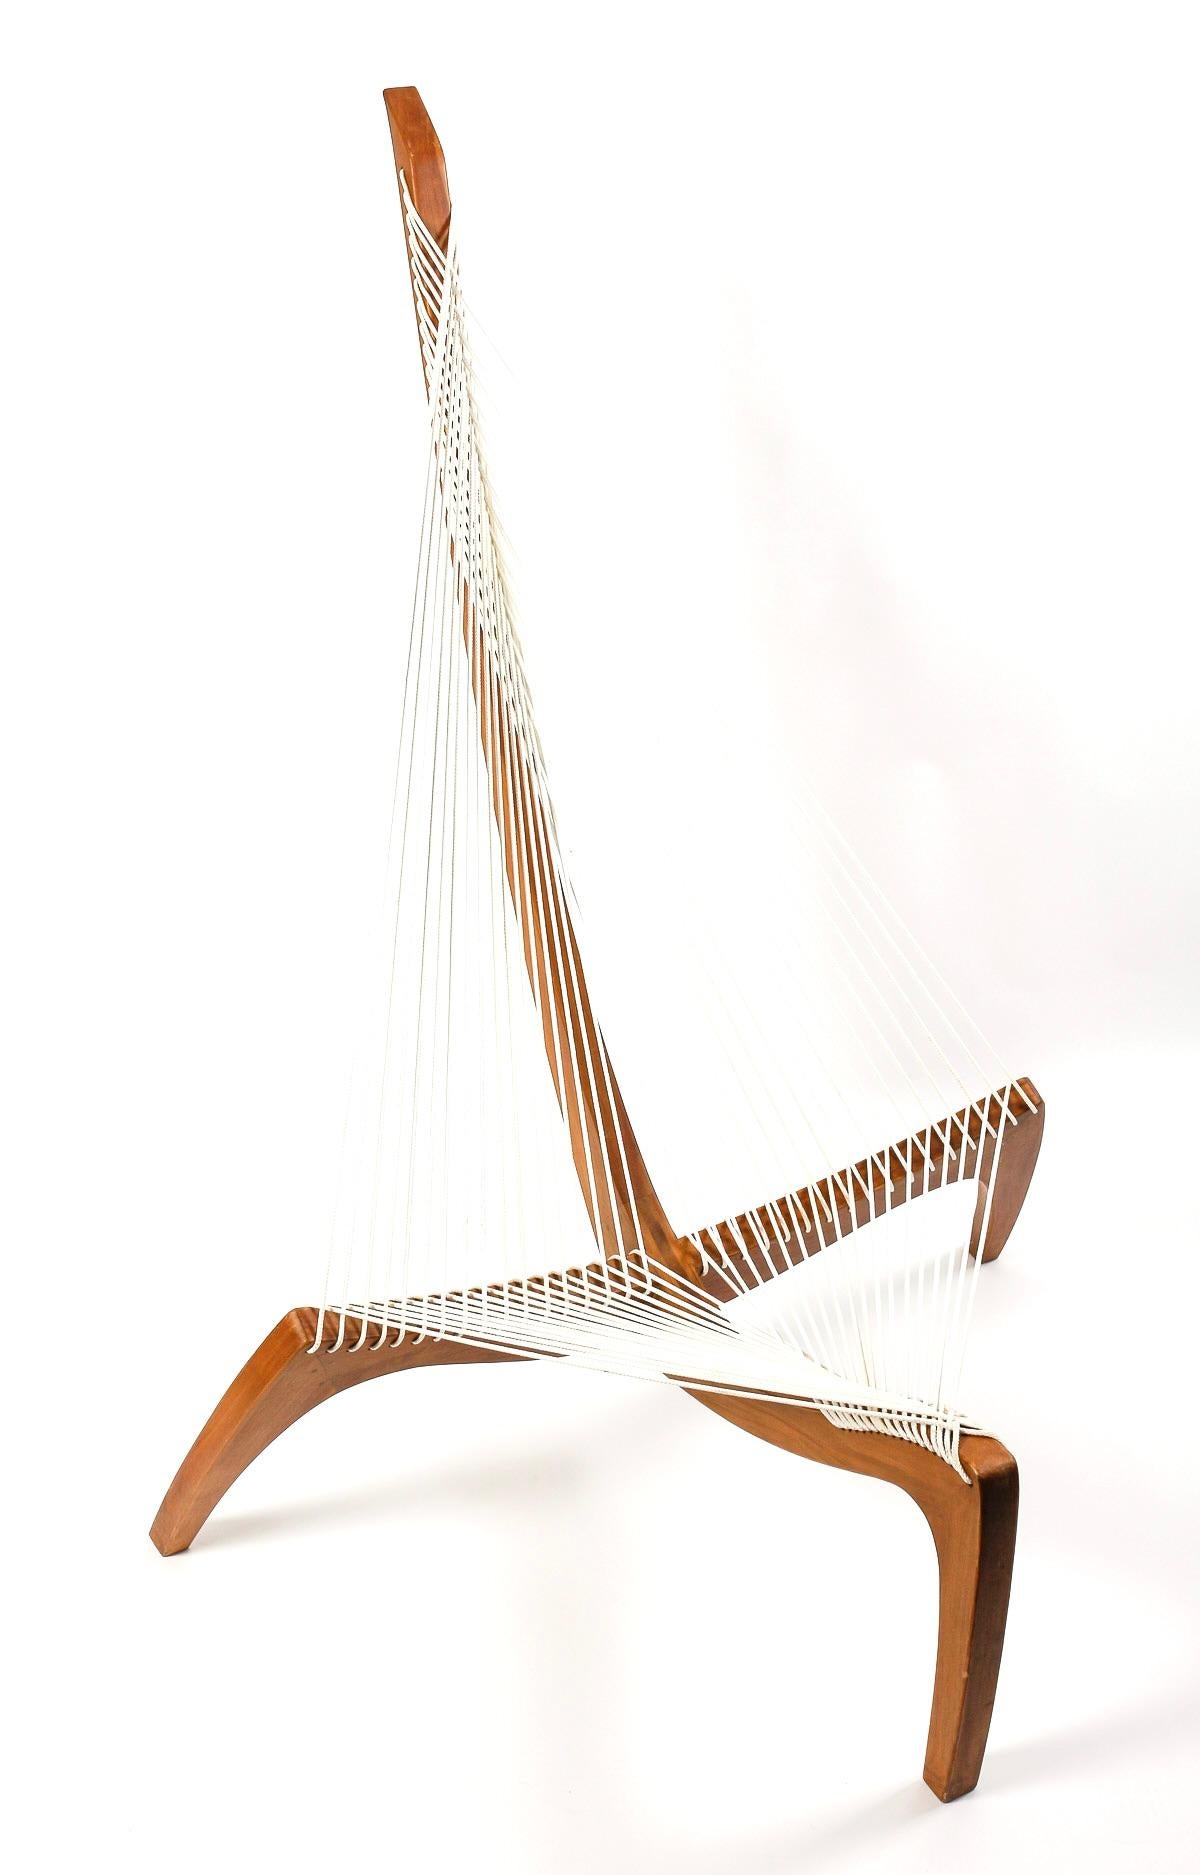 Fin du 20e siècle 1970 Paire de chaises harpe par Jørgen Høvelskov pour Christensen & Larsen Møbelhandværk.